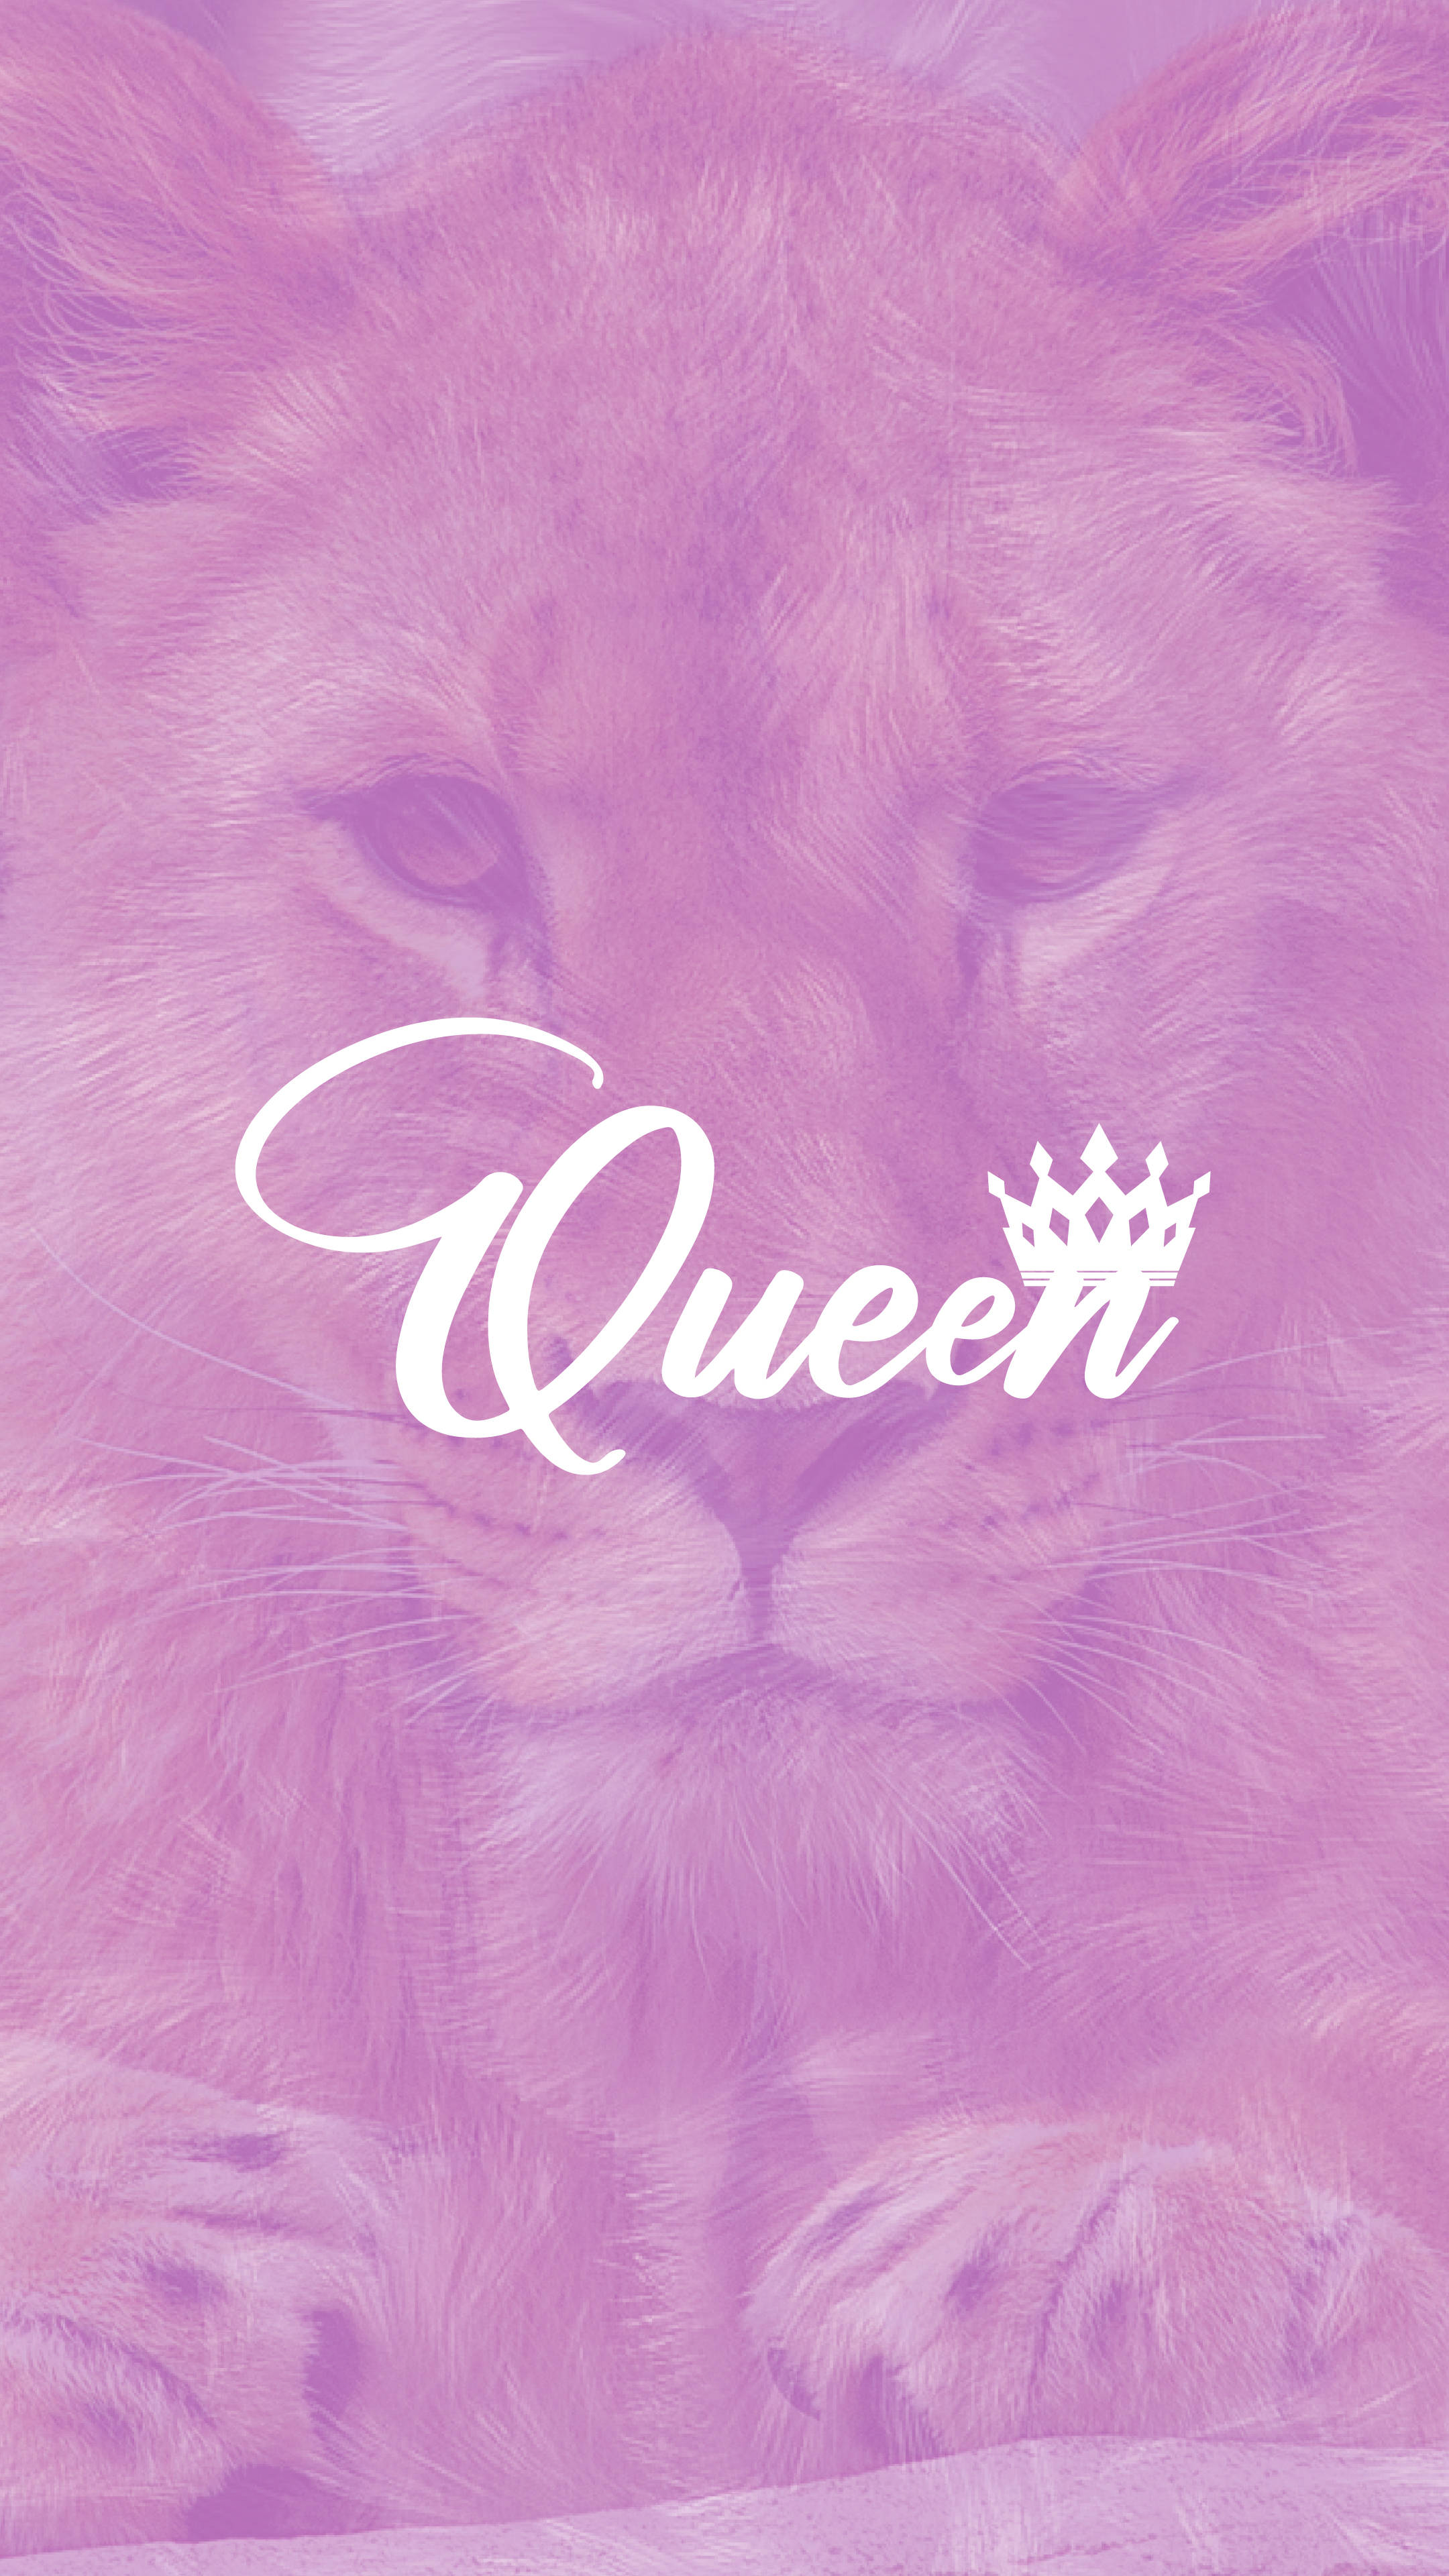 Free Queen Wallpaper Downloads, [200+] Queen Wallpapers for FREE |  